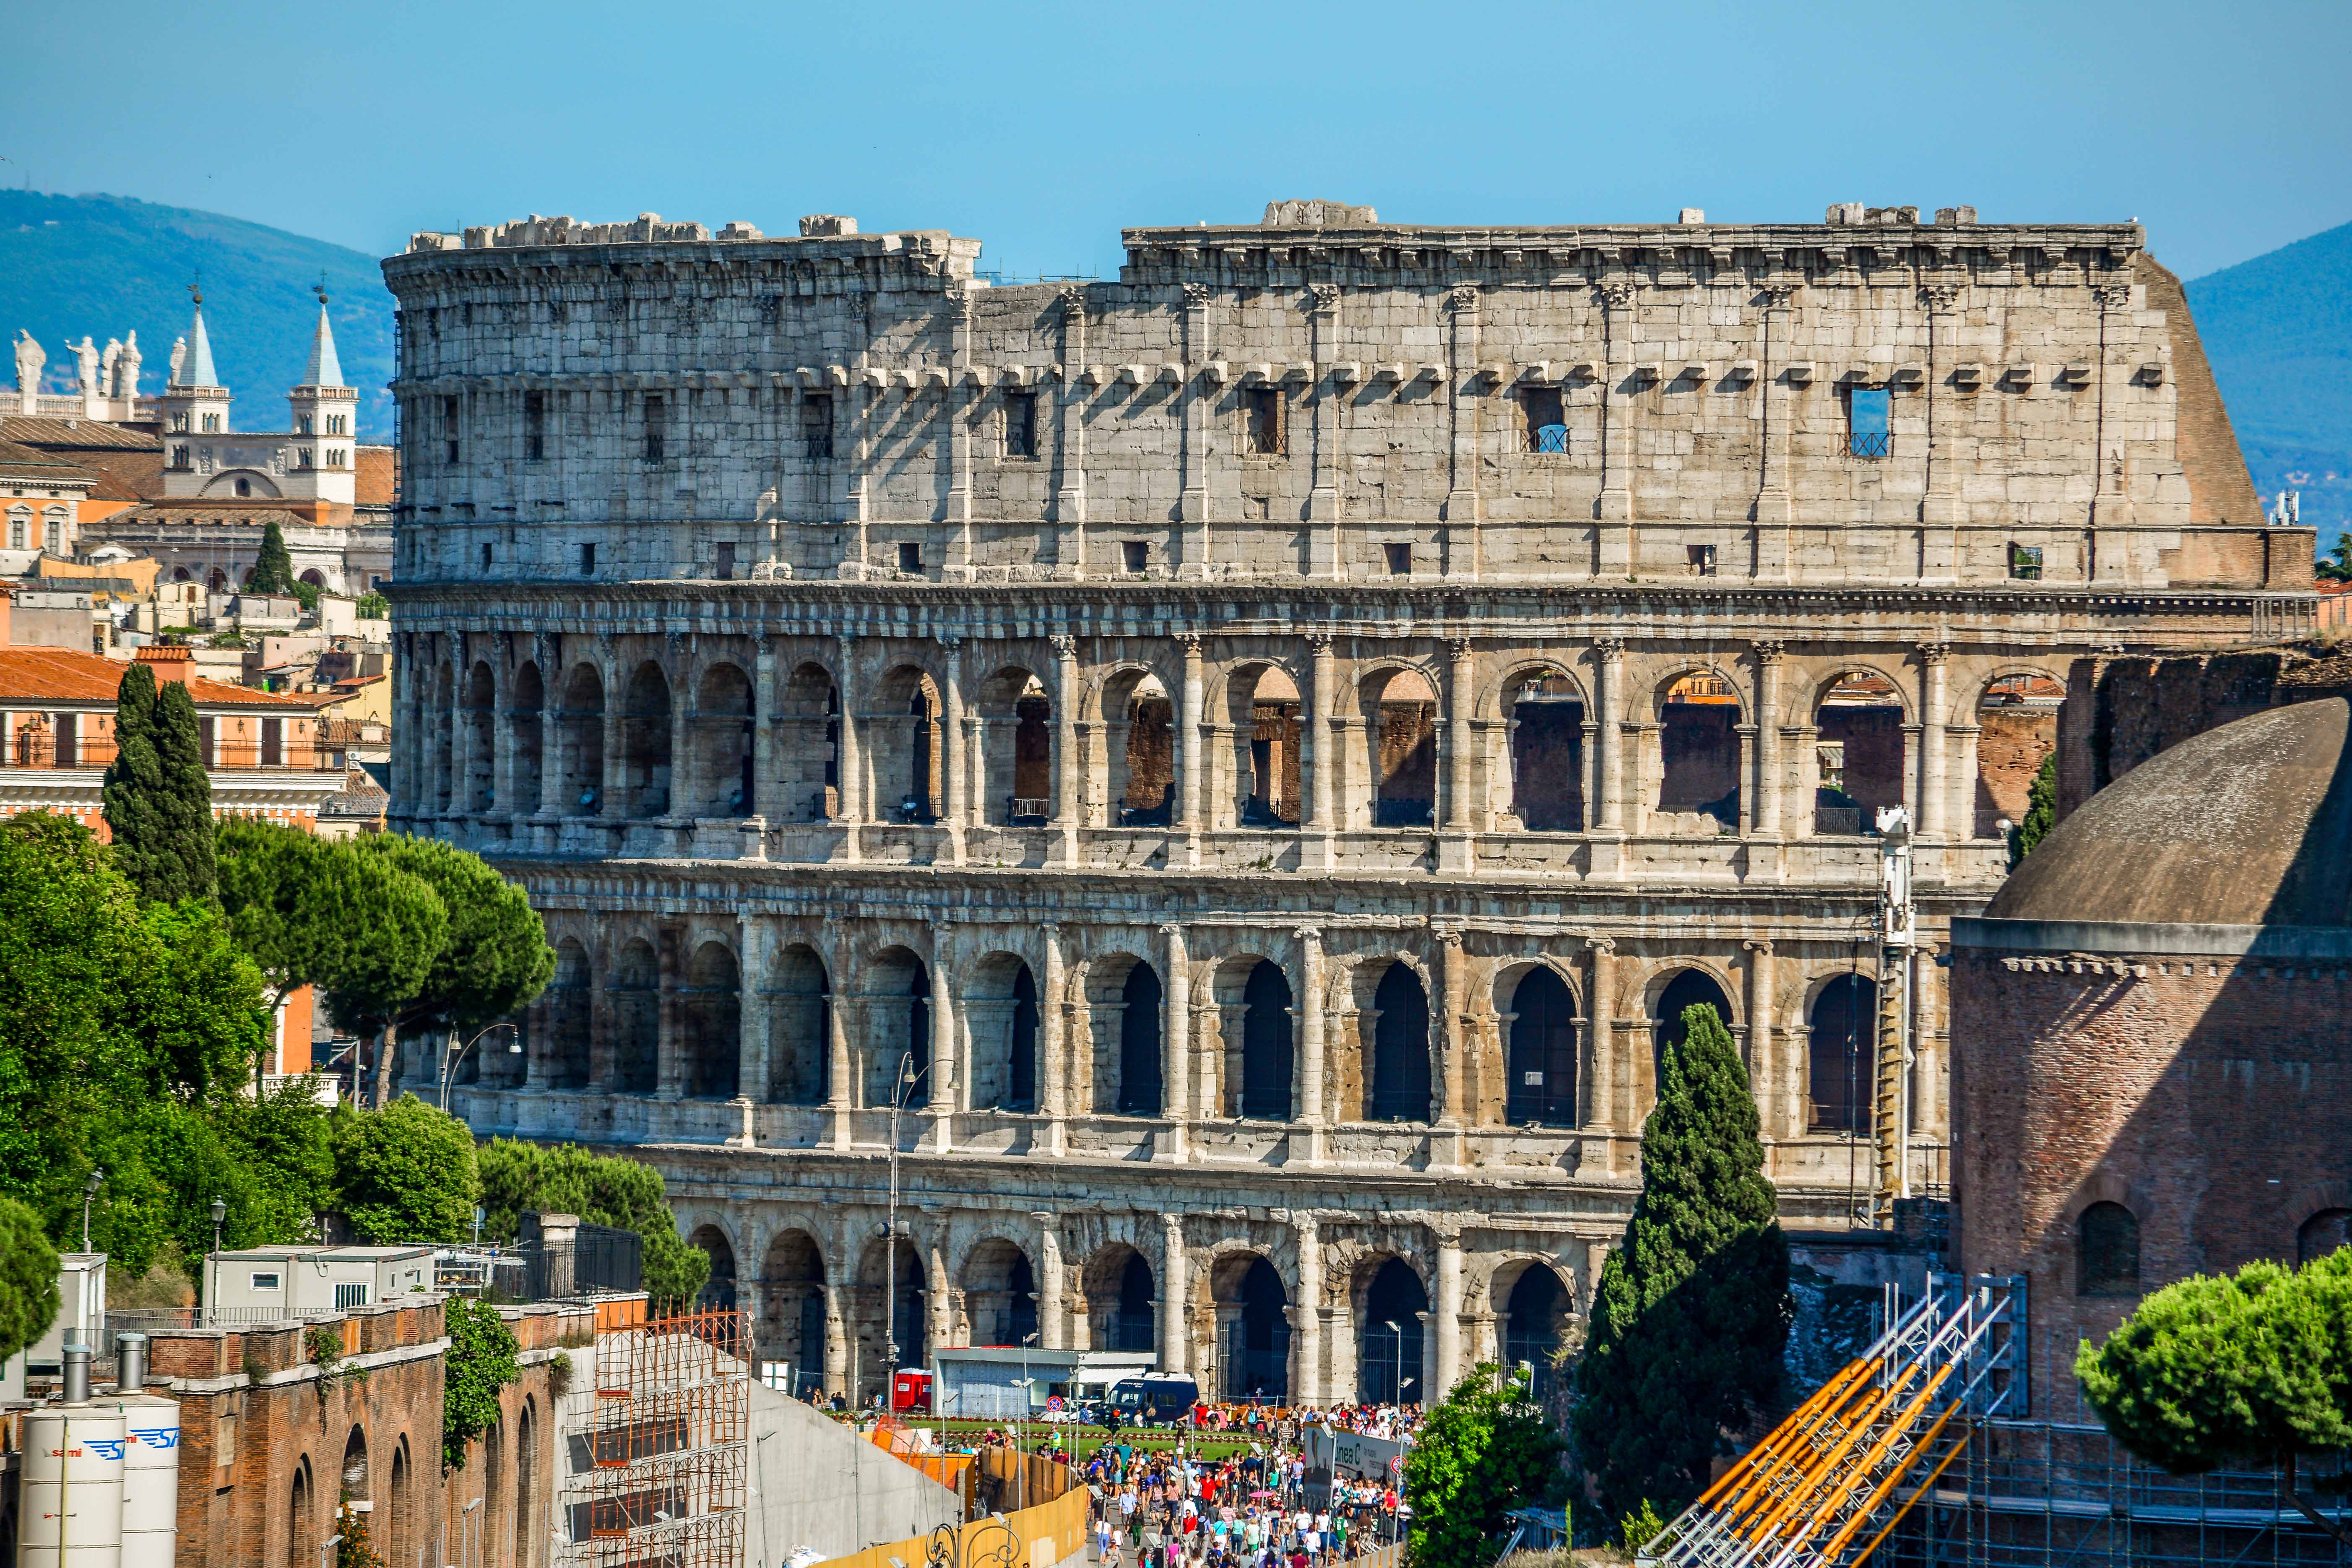 Venez visiter avec nous le Vittoriano, Trevi, Trastevere, Villa Borghèse et Gianicolo. Les grands monuments de Rome, Capitale de l'Italie !